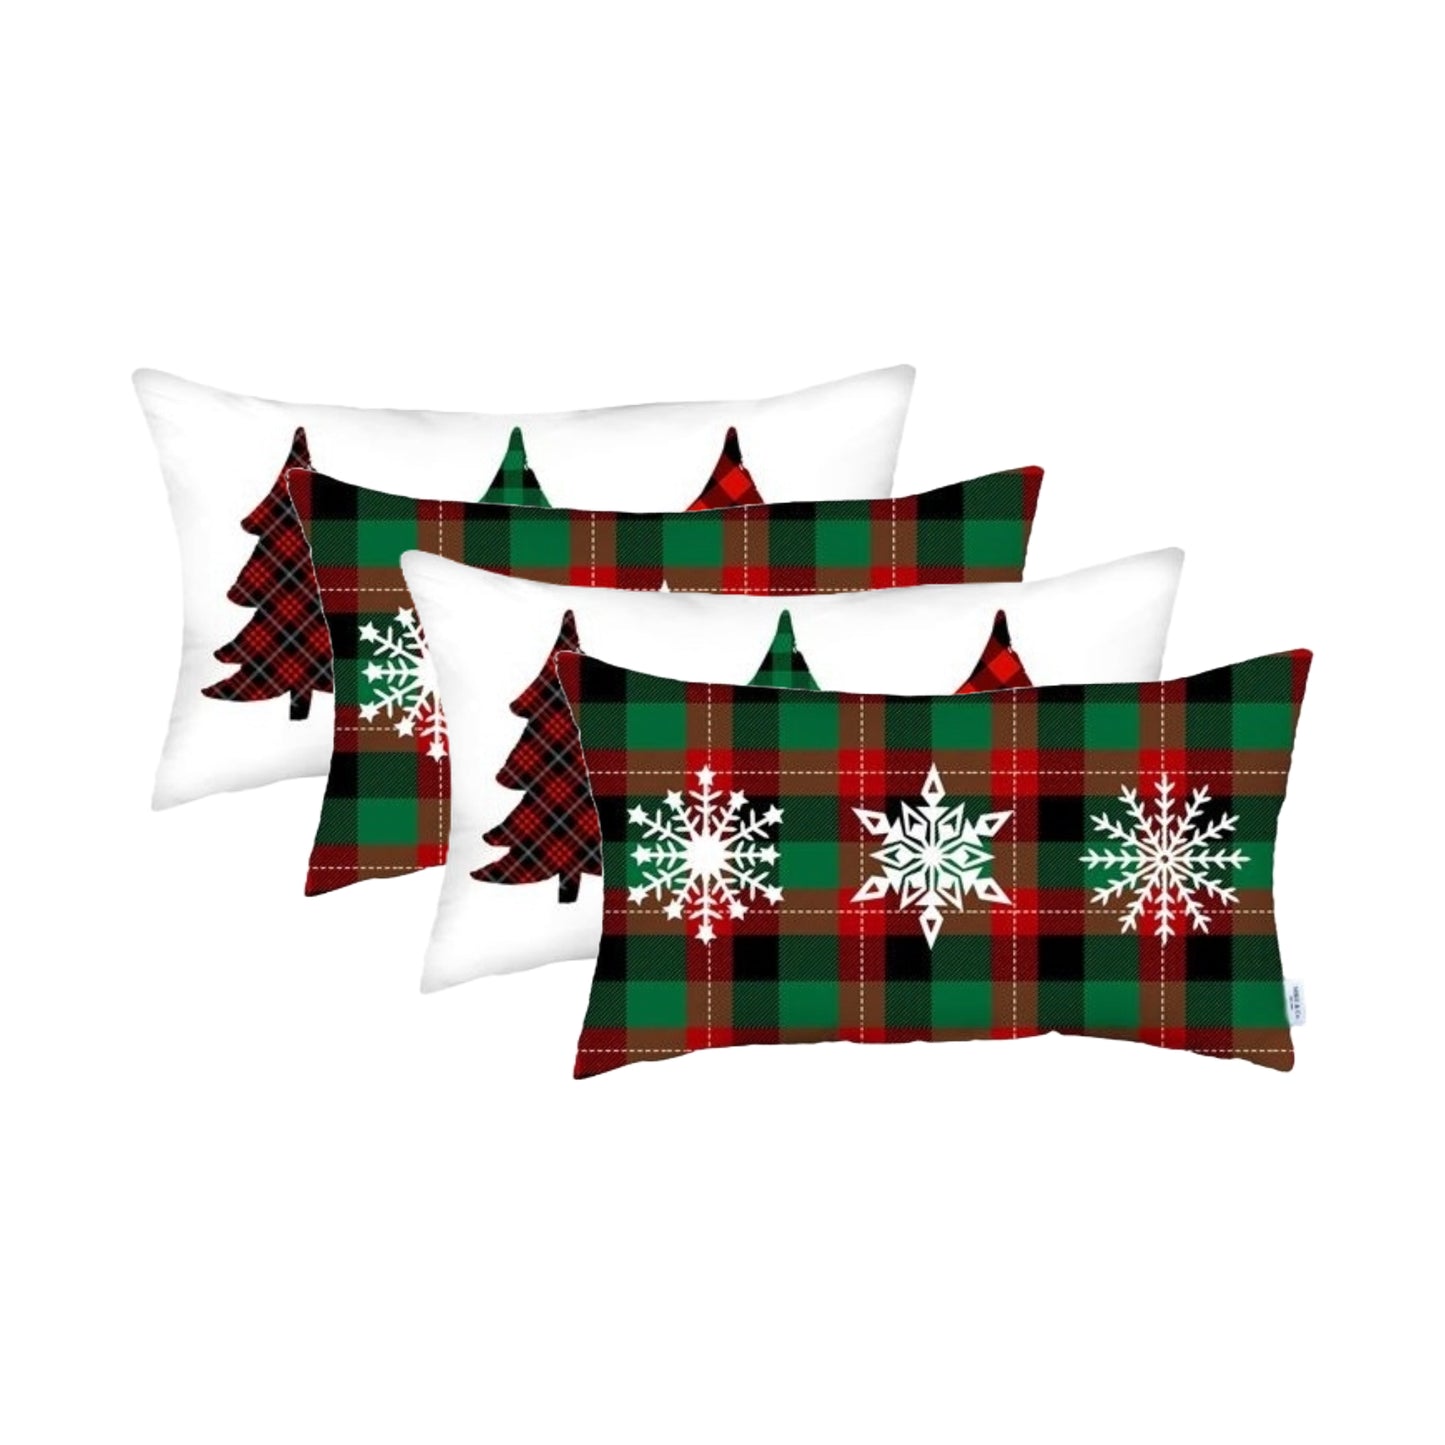 Set of 4 Christmas Plaid Lumbar Decorative Pillow Covers